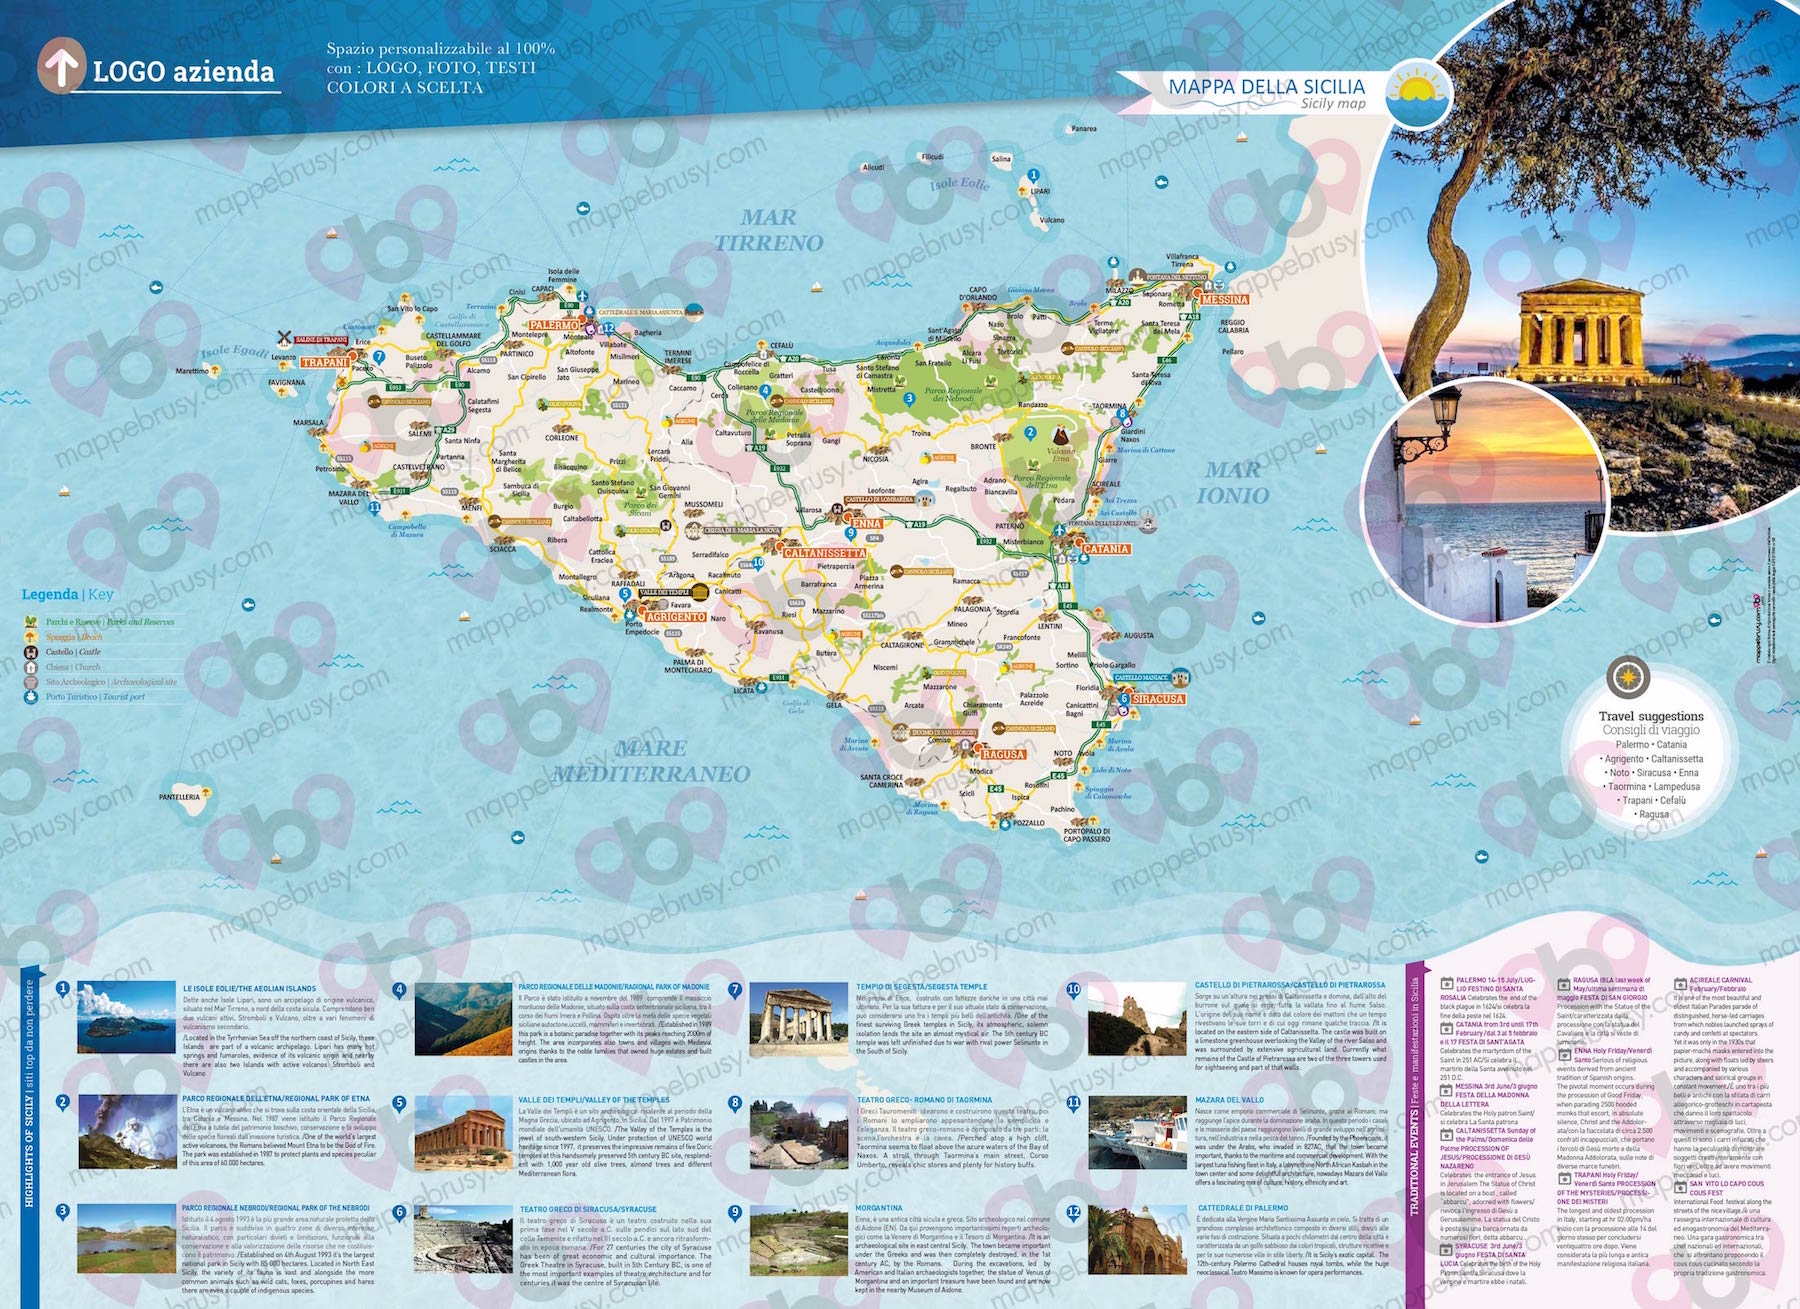 Mappa della Sicilia - Sicily map - mappa Sicilia - mappa personalizzata della Sicilia - mappa tursitica della Sicilia